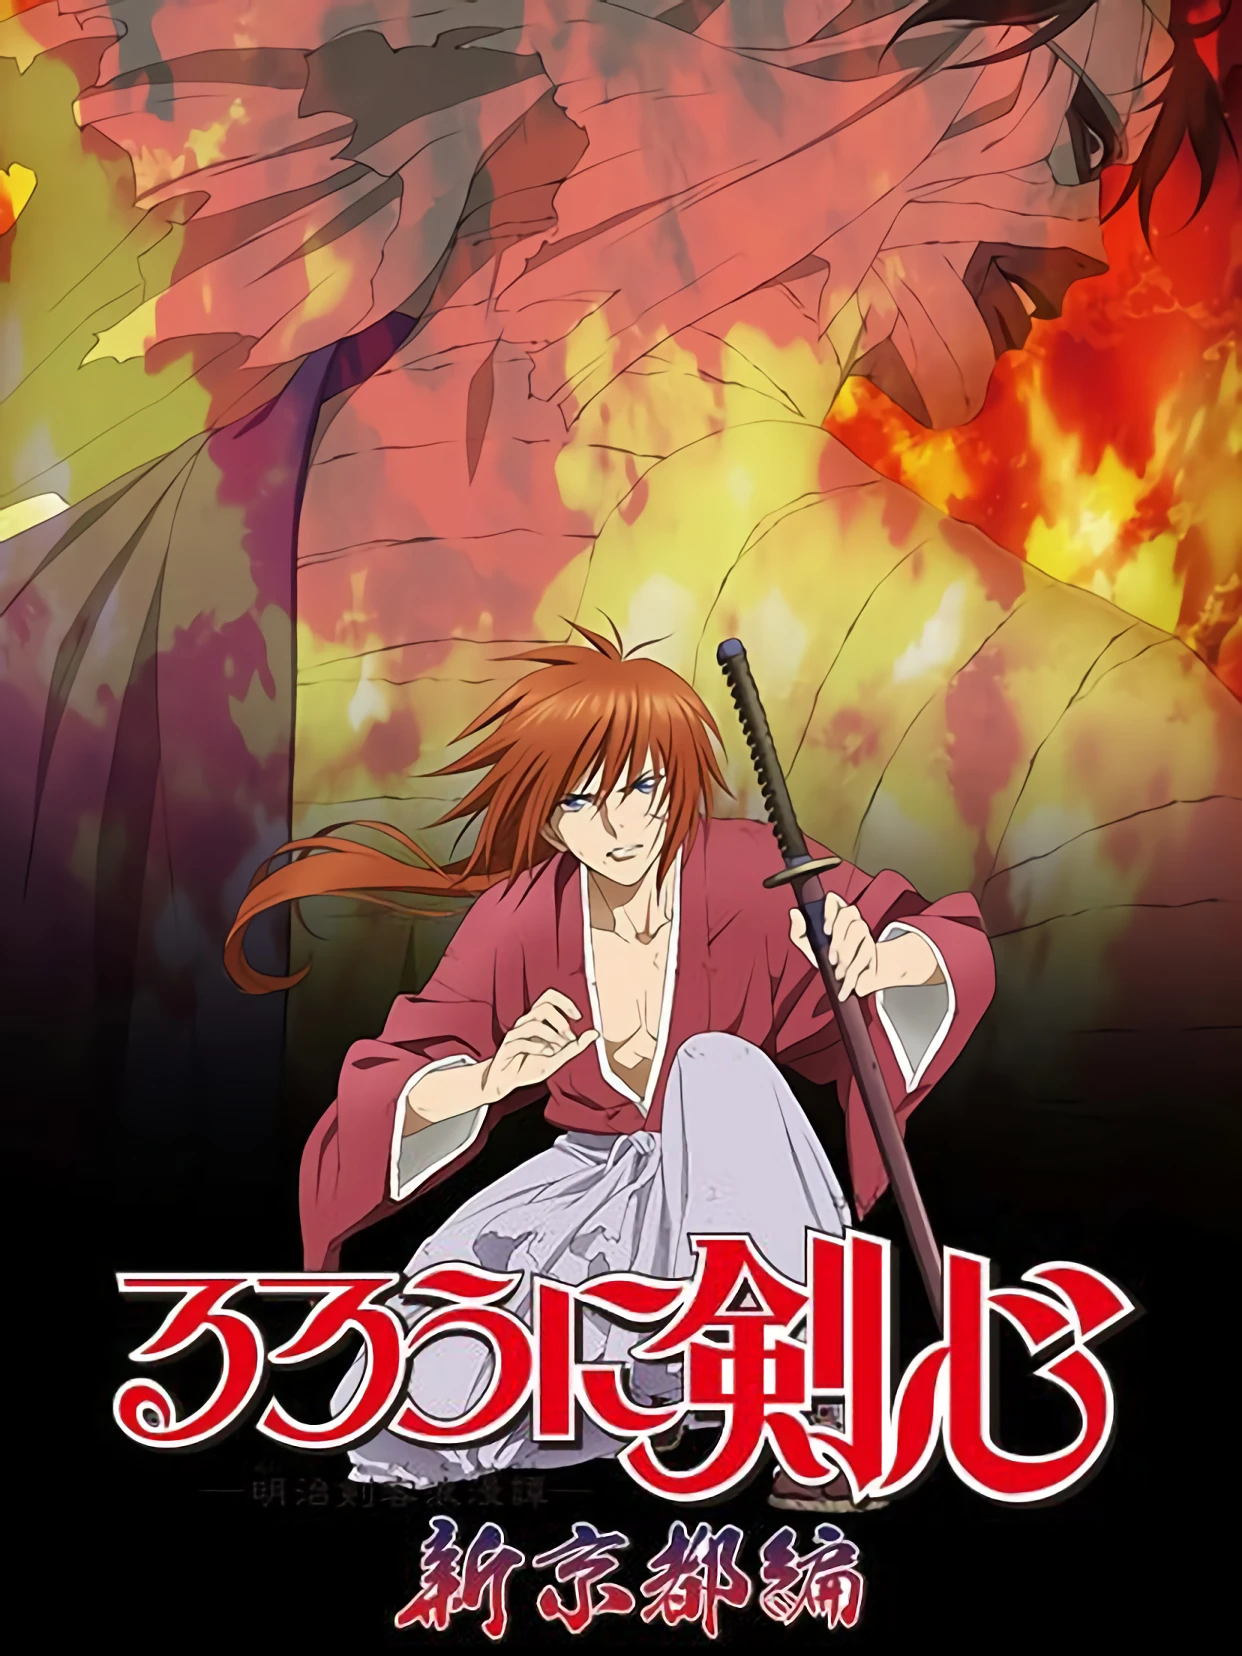 Lãng khách Kenshin: Kinh đô mới | るろうに剣心 -明治剣客浪漫譚- 新京都編 (2012)